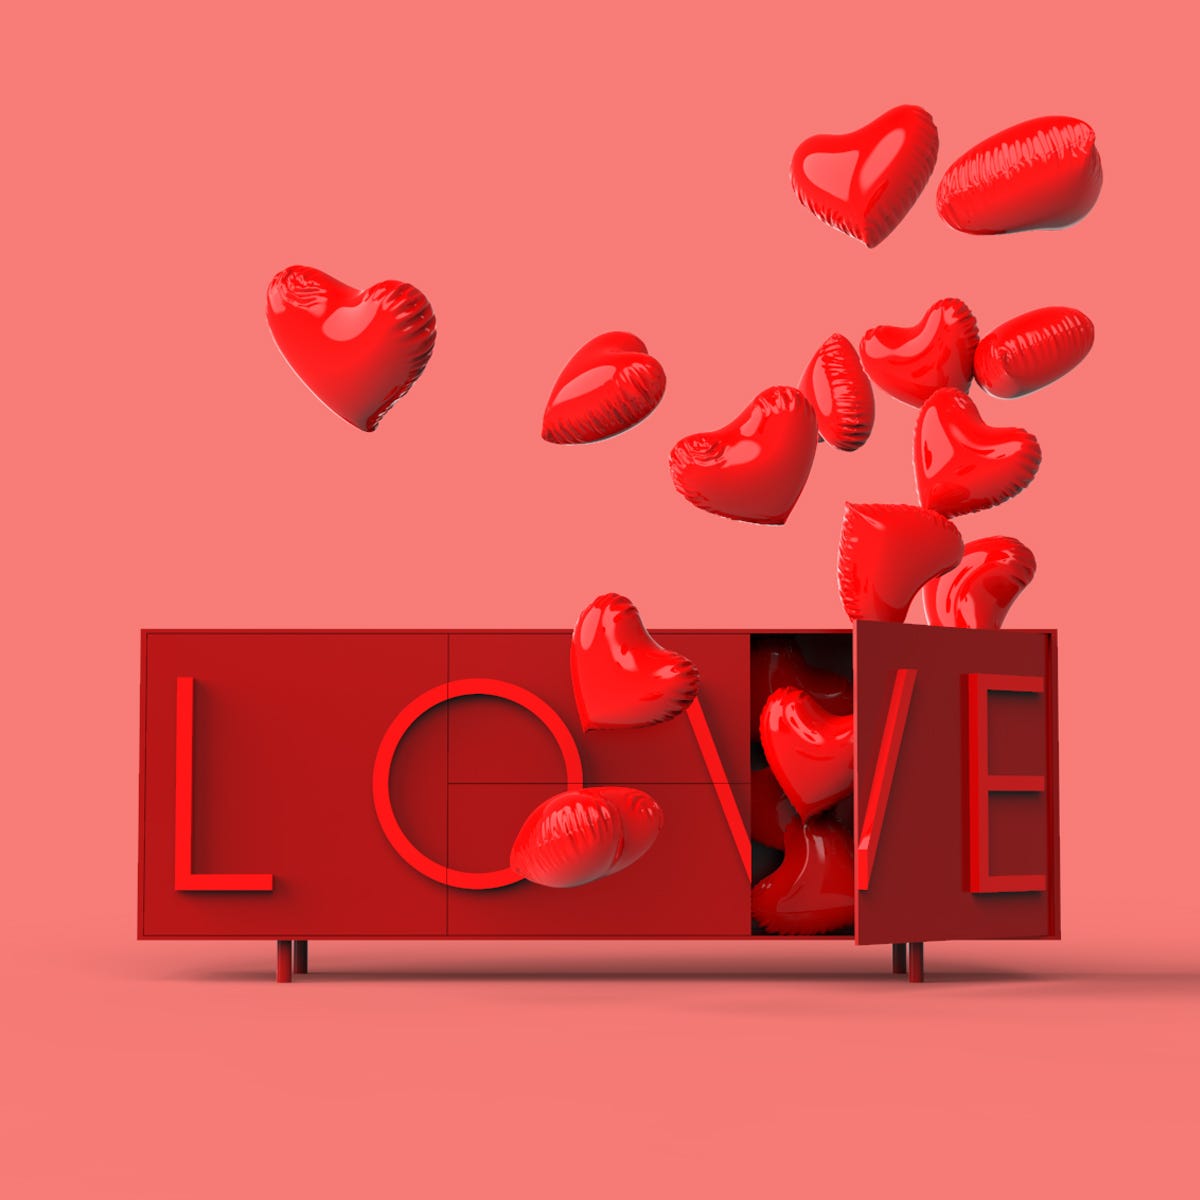 Driade Love Container in red color design by Fabio Novembre